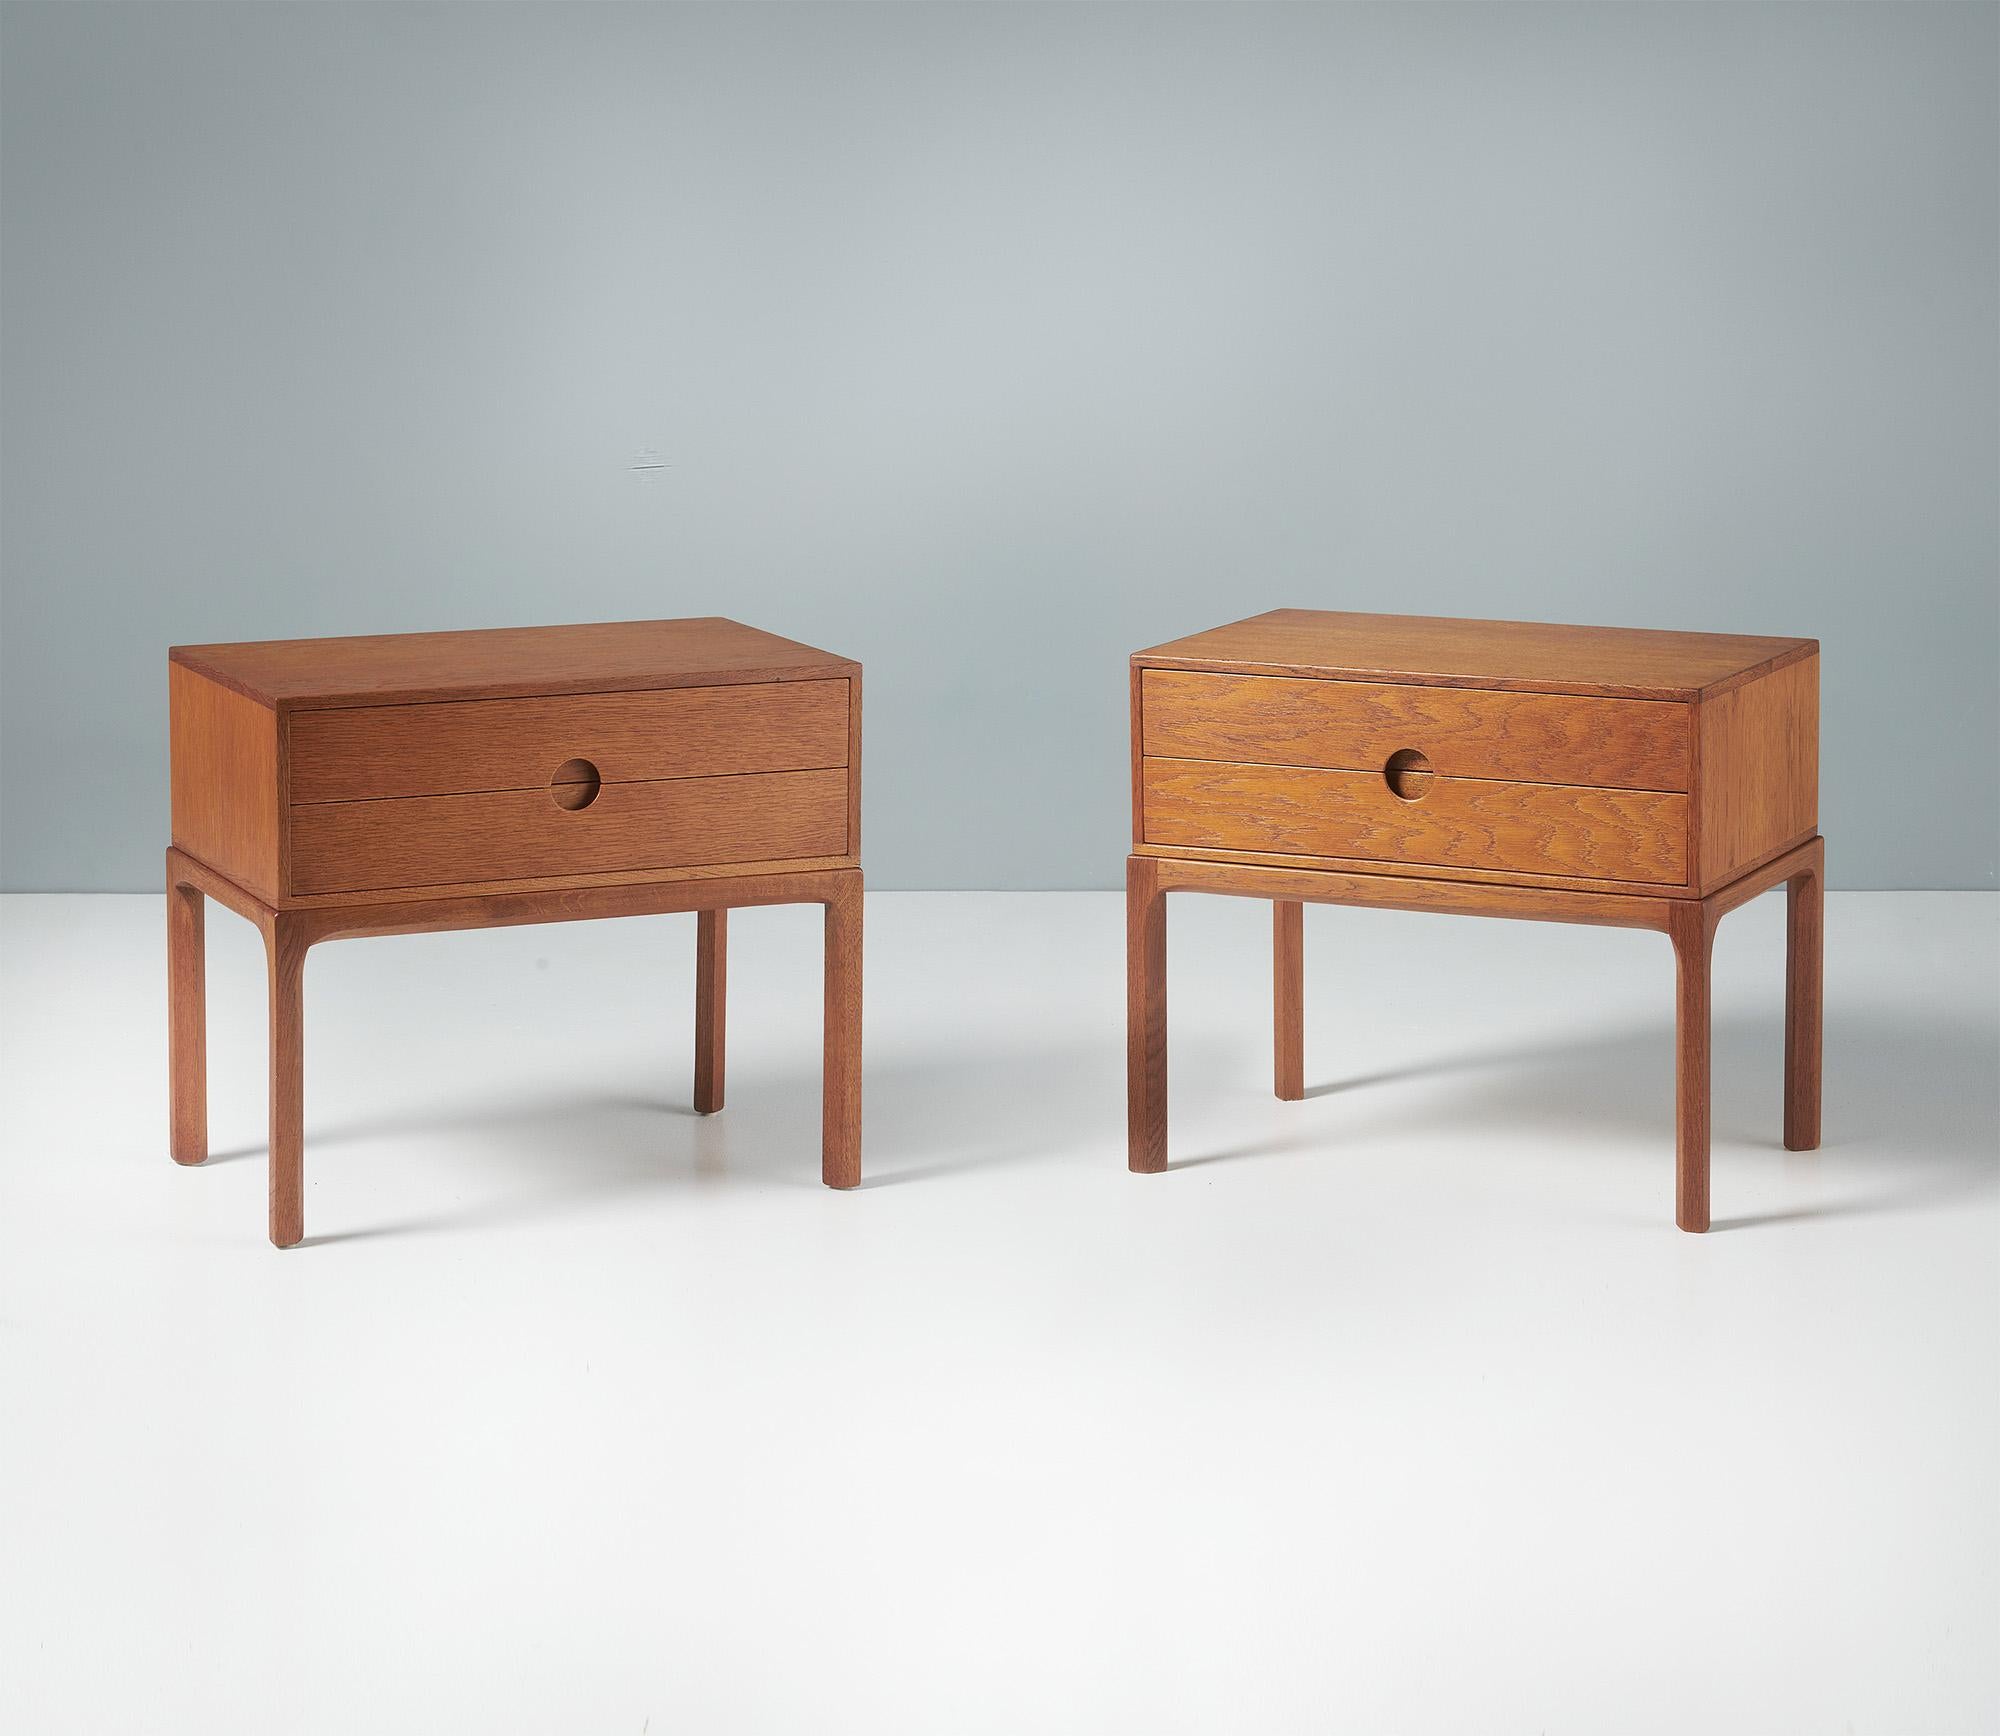 Kai Kristiansen - Meubles de chevet, vers 1960.

Paire de tables de chevet en chêne patiné, produites par Aksel Kjersgaard à Odder, au Danemark, au début des années 1960. Le design présente les poignées de tiroirs en demi-lune qui sont la marque de